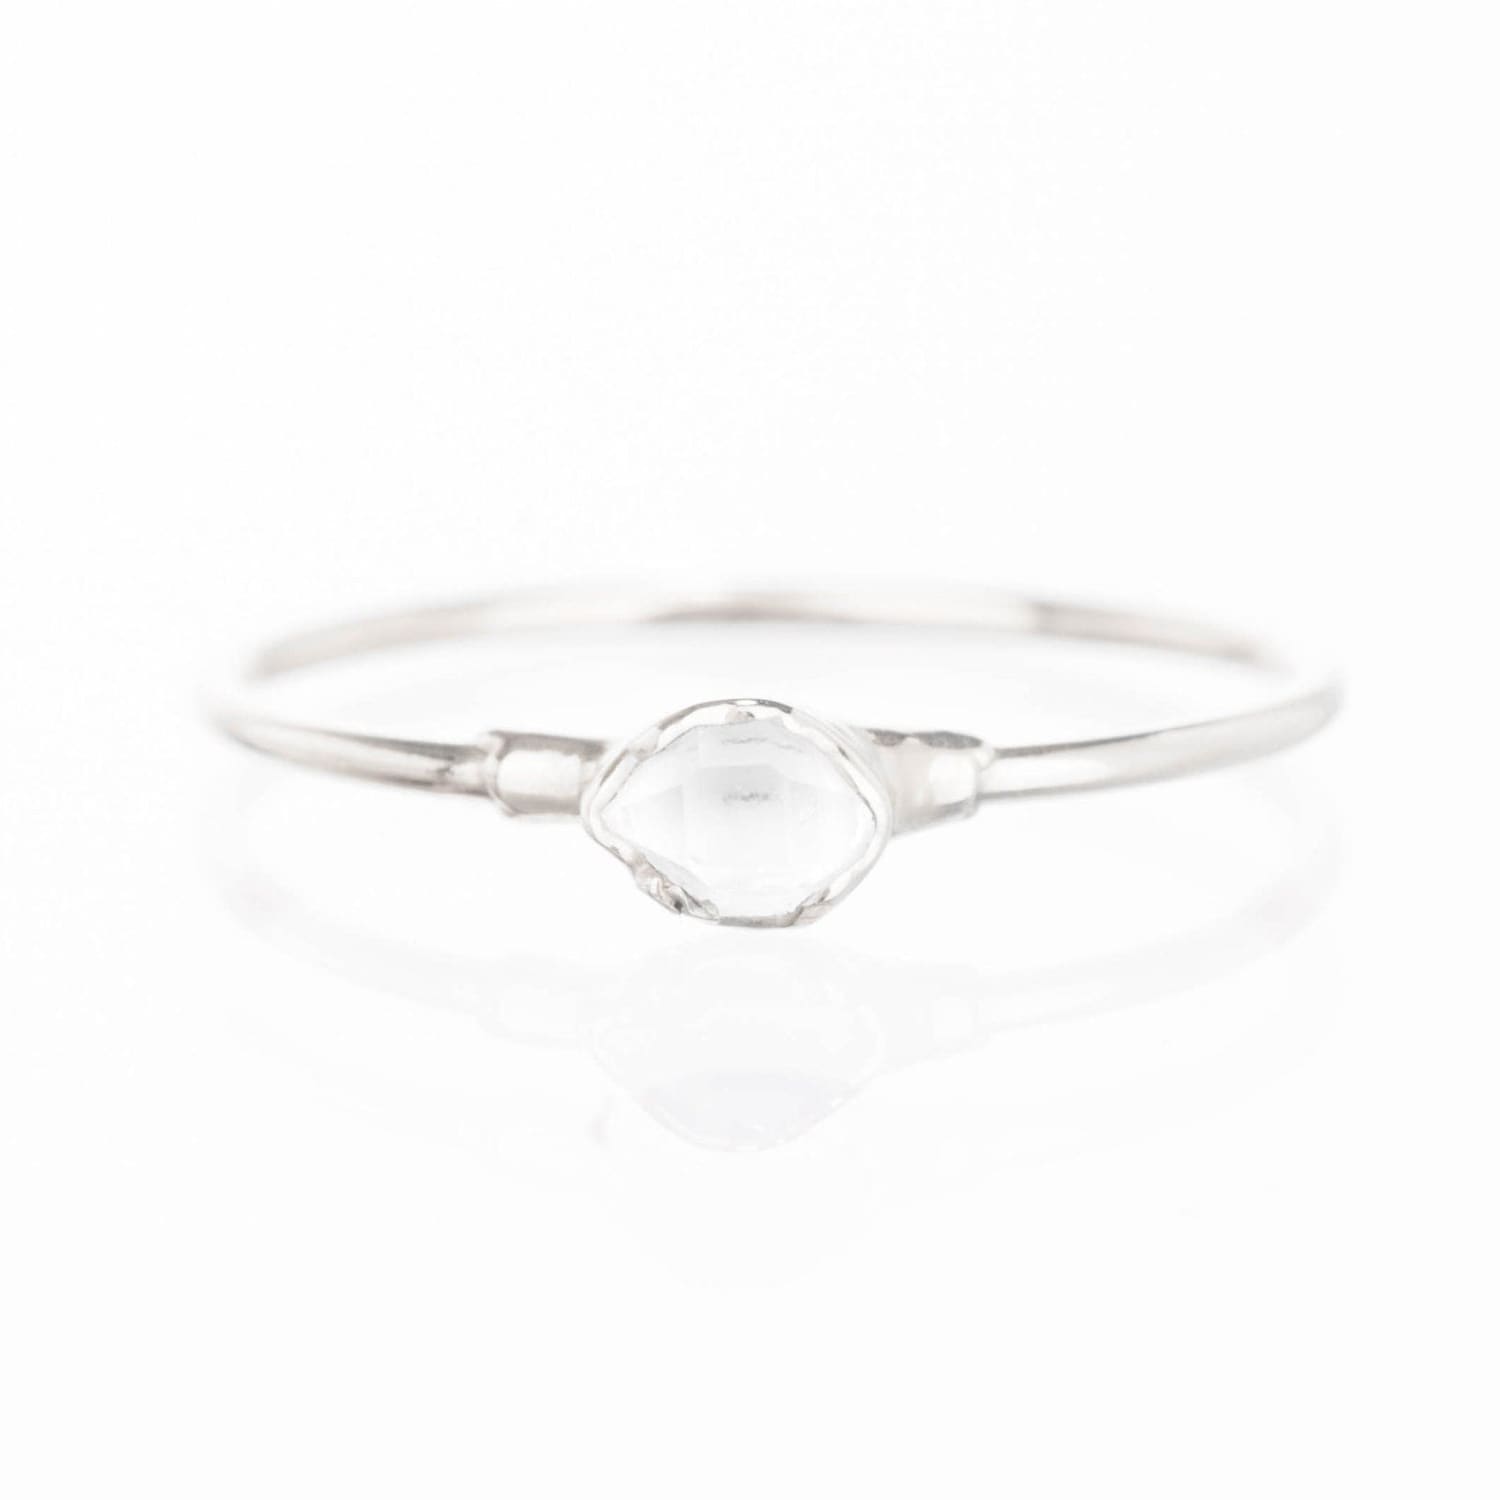 Dainty Raw Herkimer Diamond Ring in Sterling Silver Gemstone